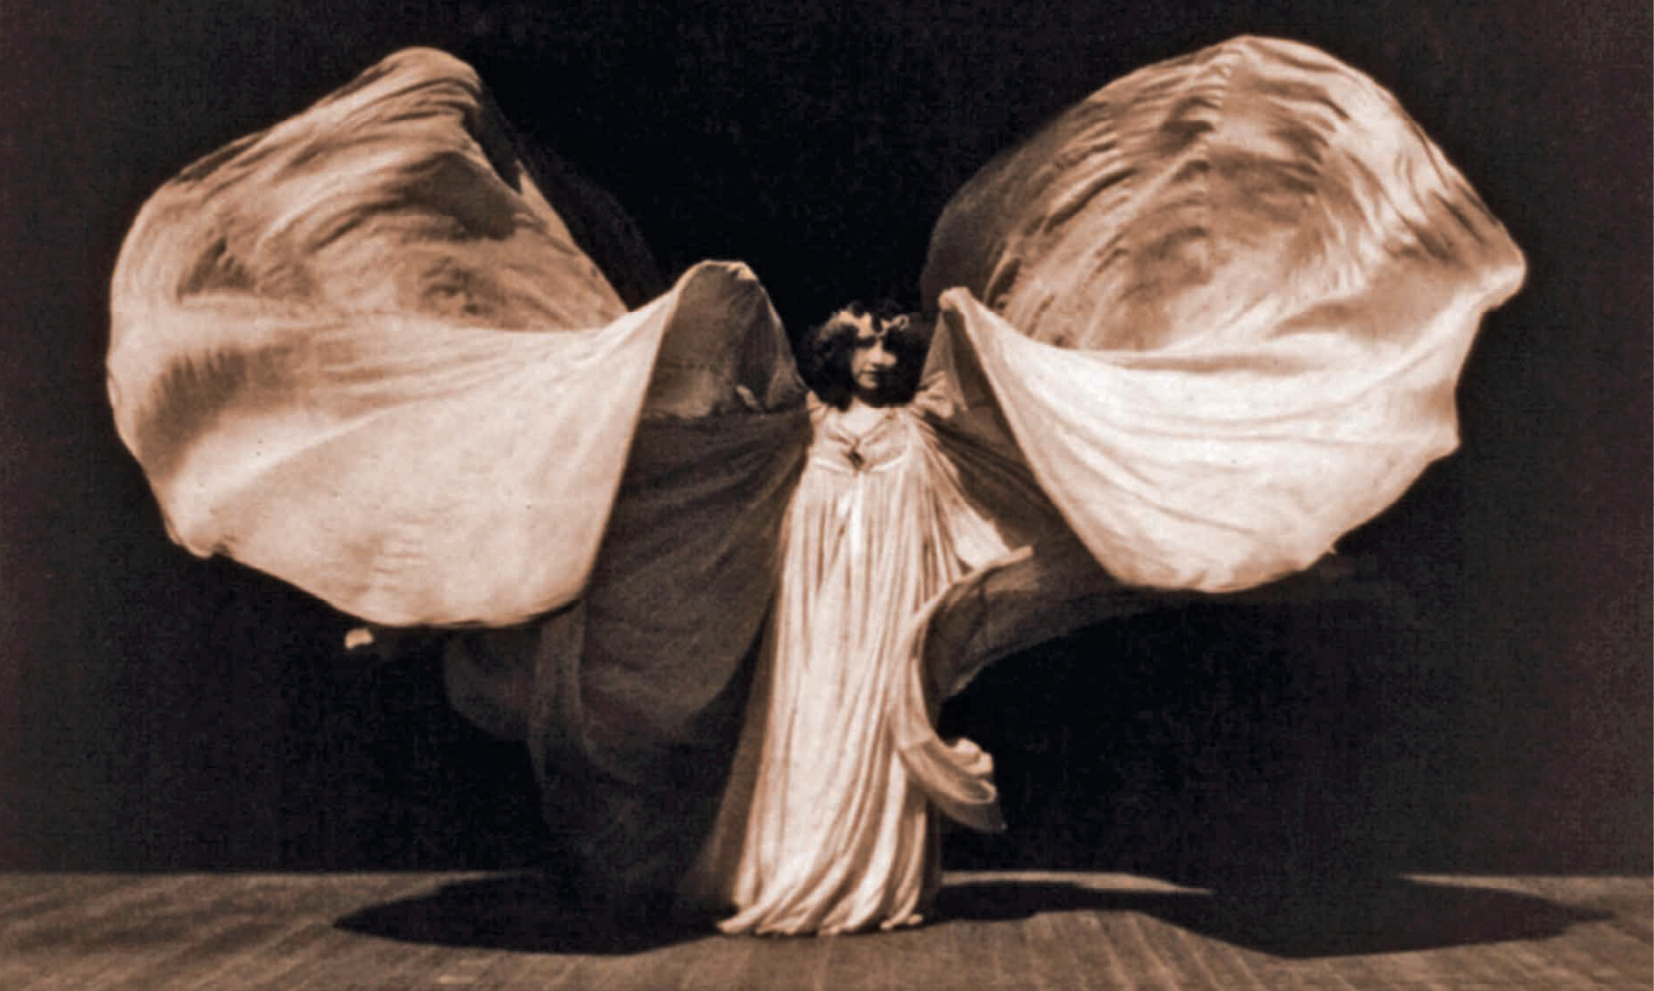 Fotografia em preto e branco. Dançarina no palco, vestida com uma roupa clara esvoaçante. Os braços estão em movimento e simulam asas com o tecido solto do vestido.